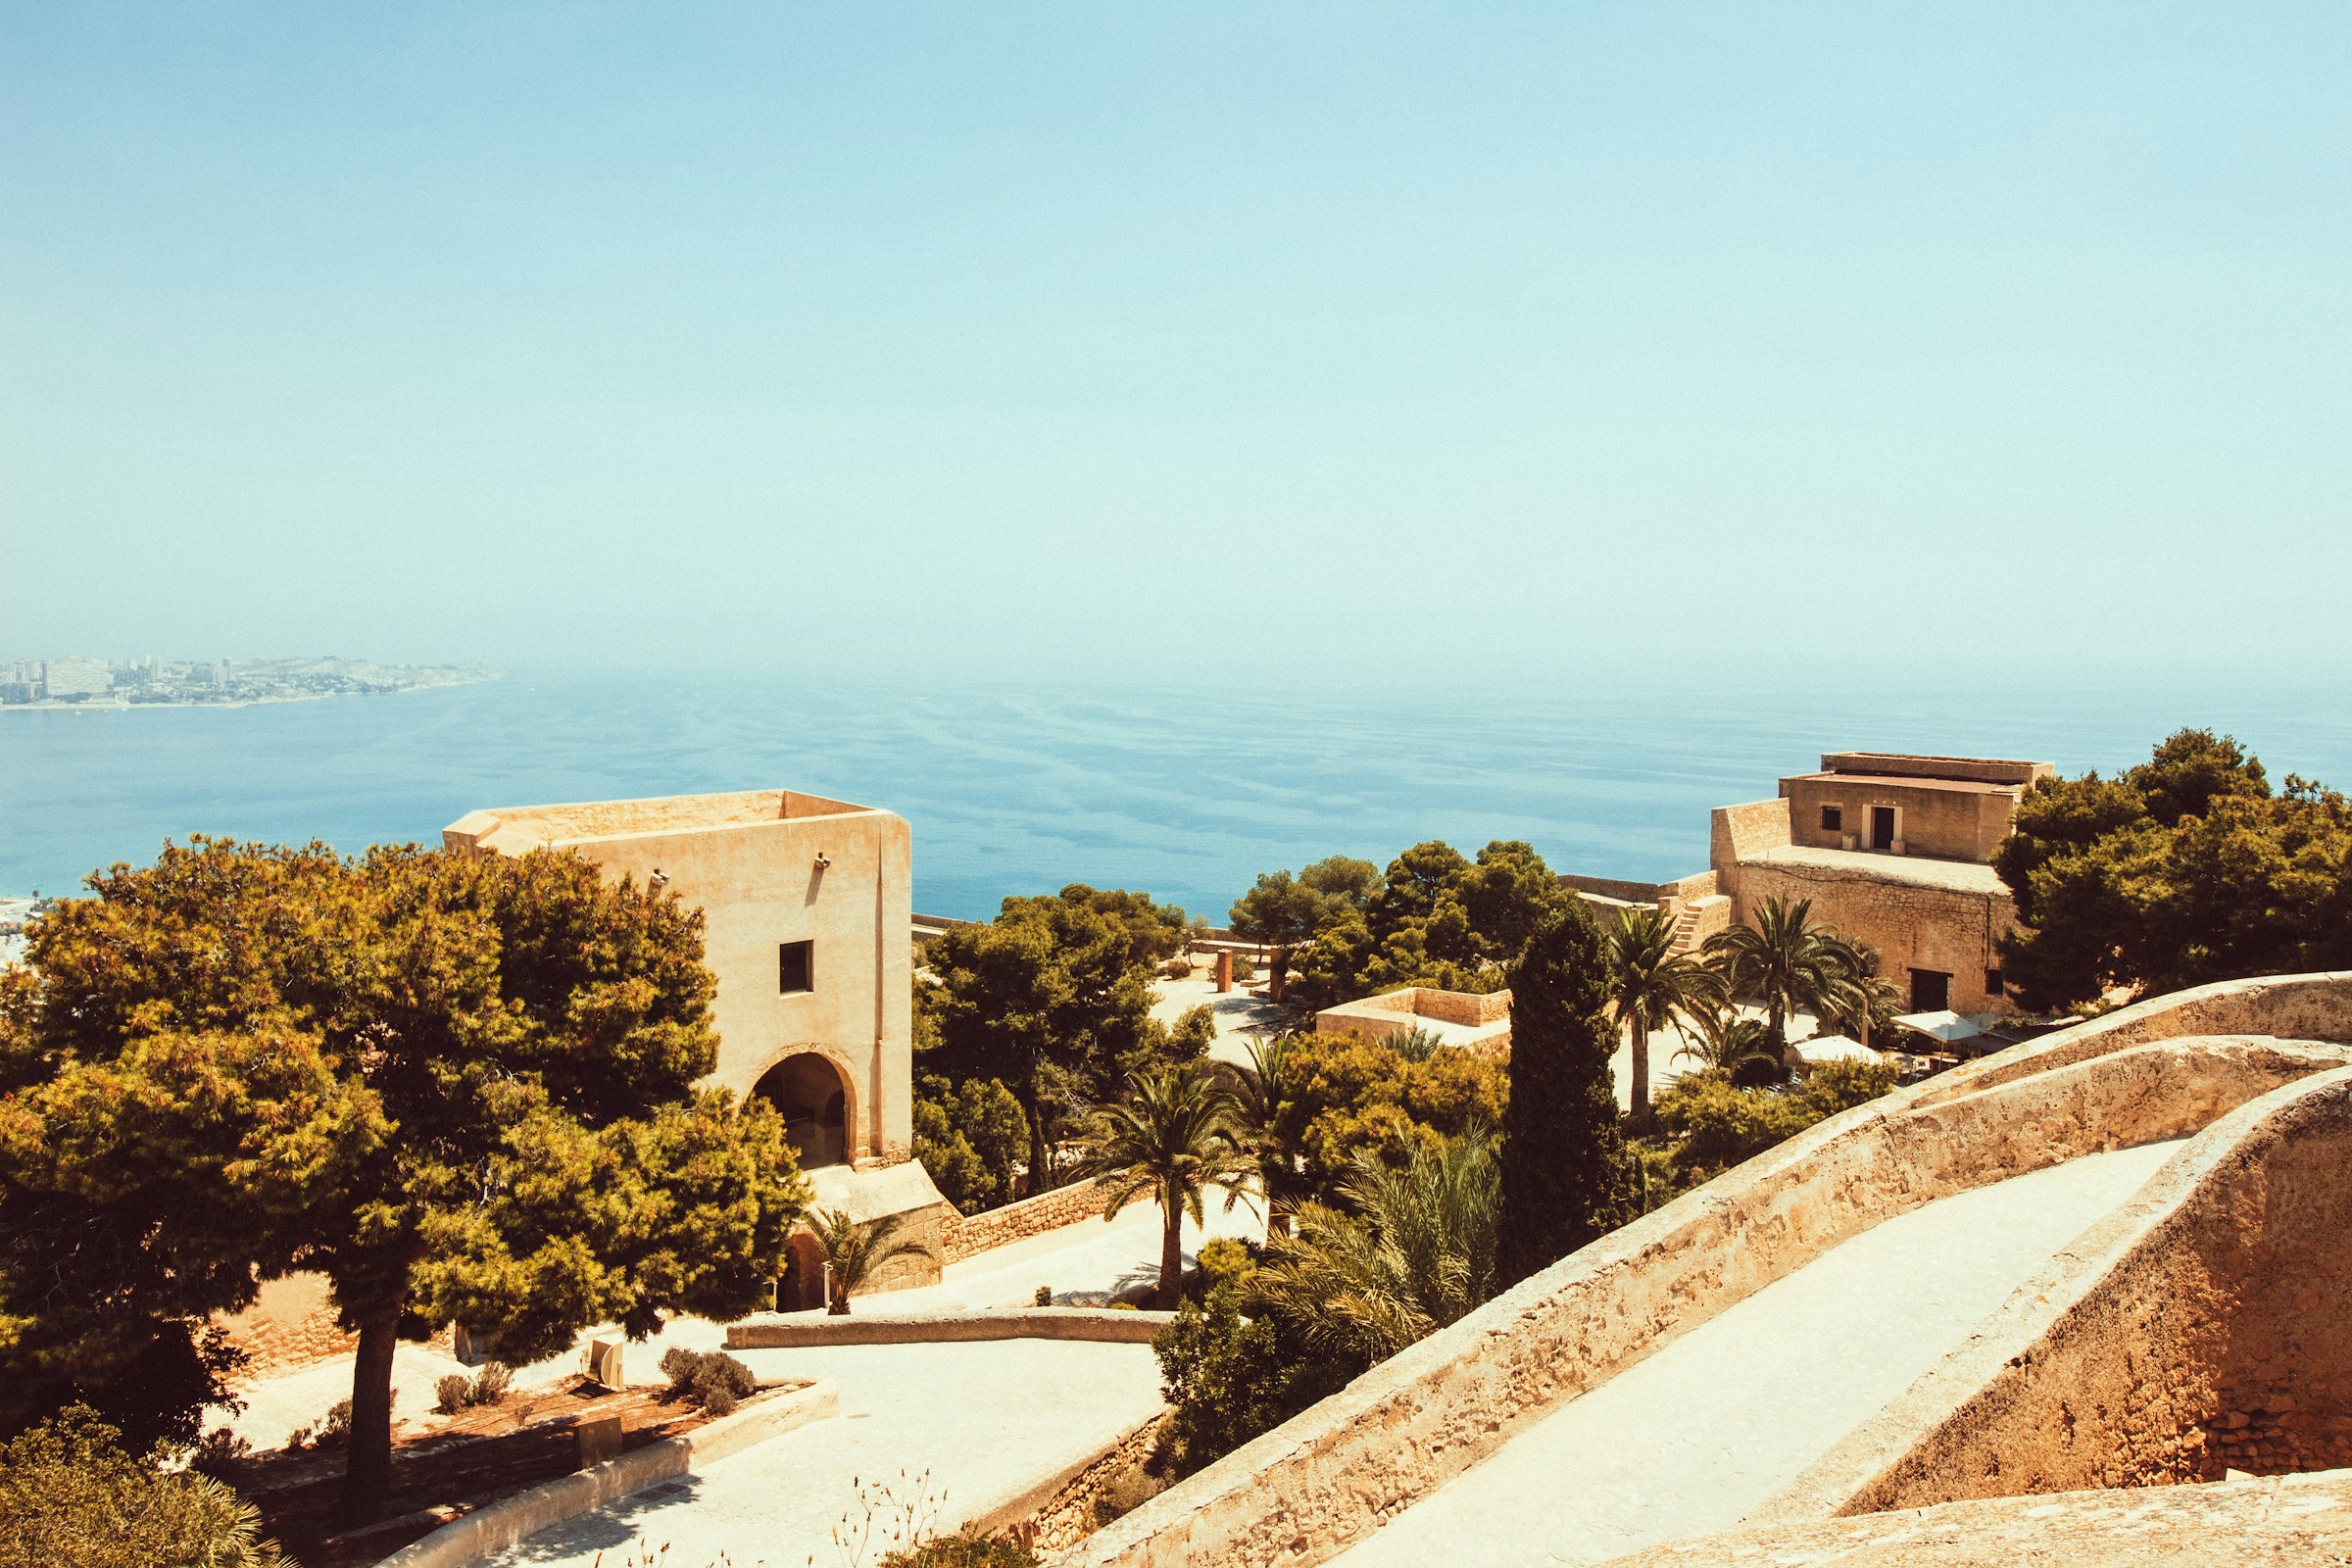 Panoramautsikt över medelhavsstaden med traditionella byggnader och gröna träd mot en blå himmel och hav i bakgrunden i Malaga.